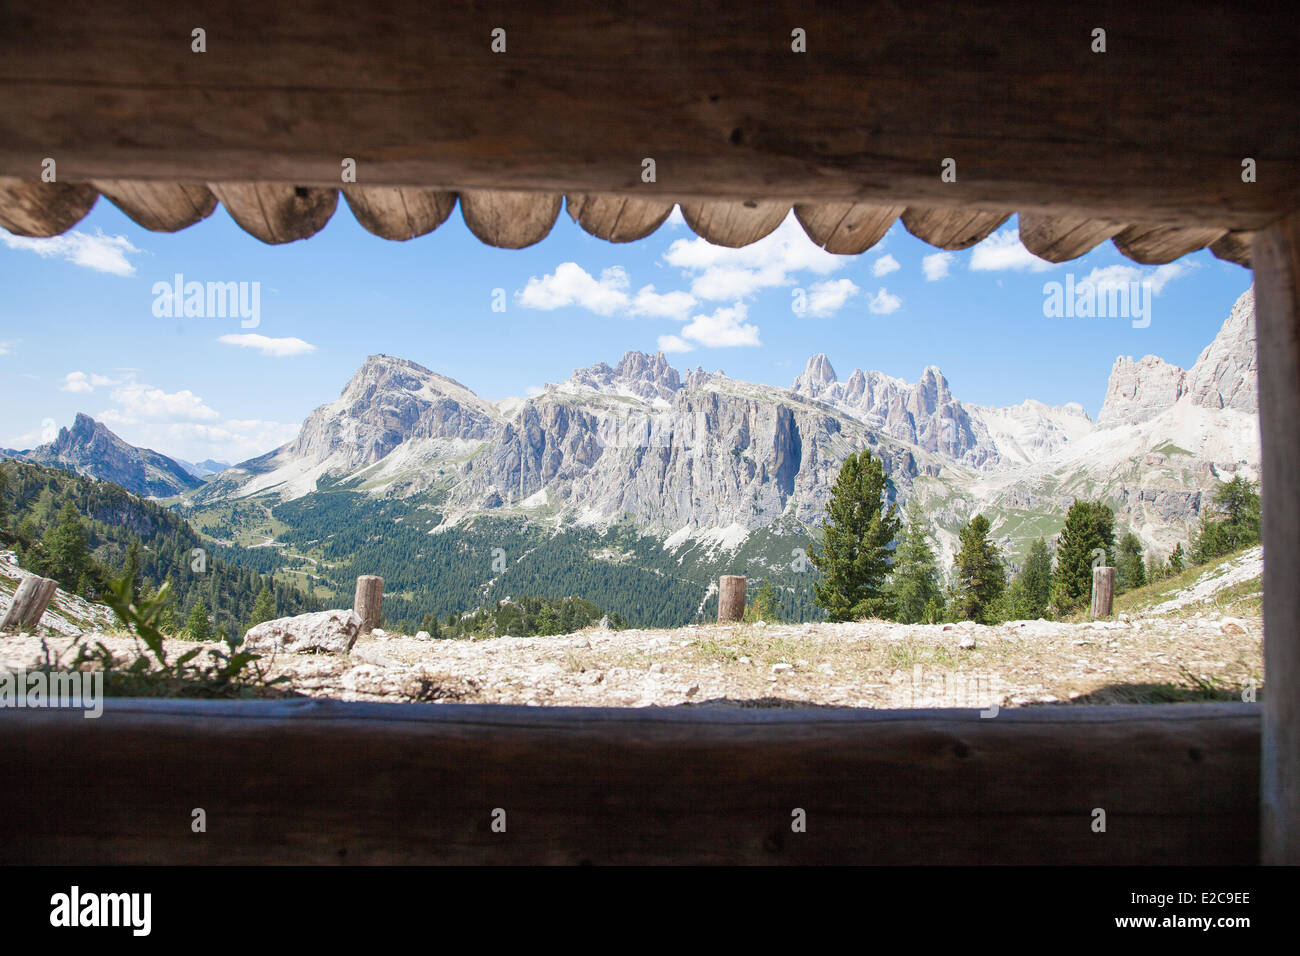 L'Italia, Trentino Alto Adige, Dolomiti massiccio elencati come patrimonio mondiale dall'UNESCO, la Grande Guerra Open Air Museum presso le Cinque Torri vicino a Cortina d'Ampezzo Foto Stock